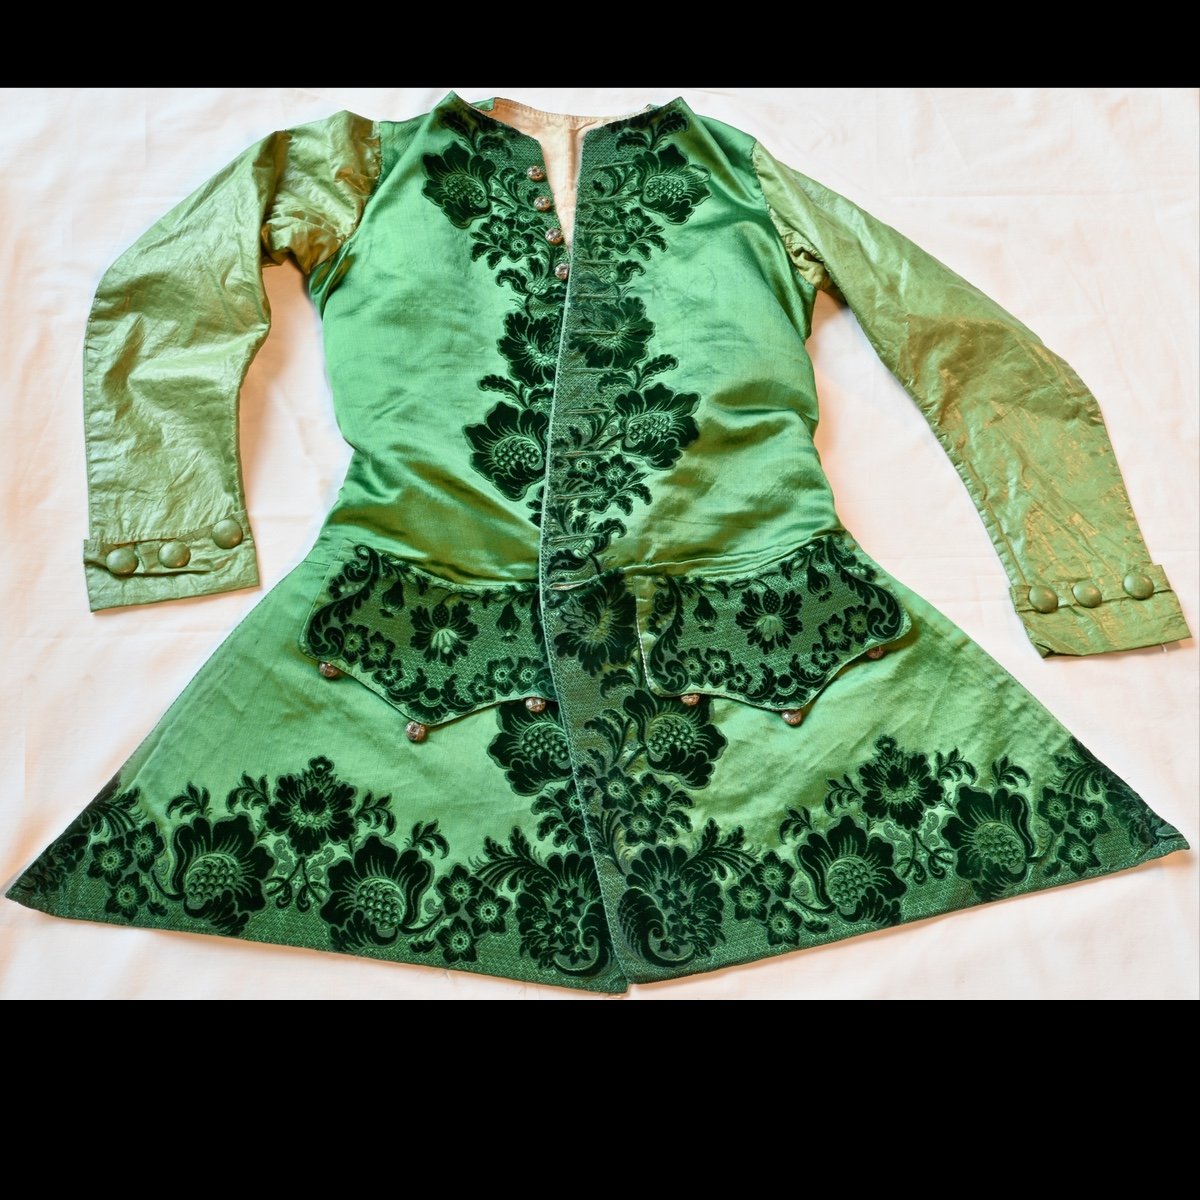 1730–1740 sleeved waistcoat, part woven green satin and part velvet